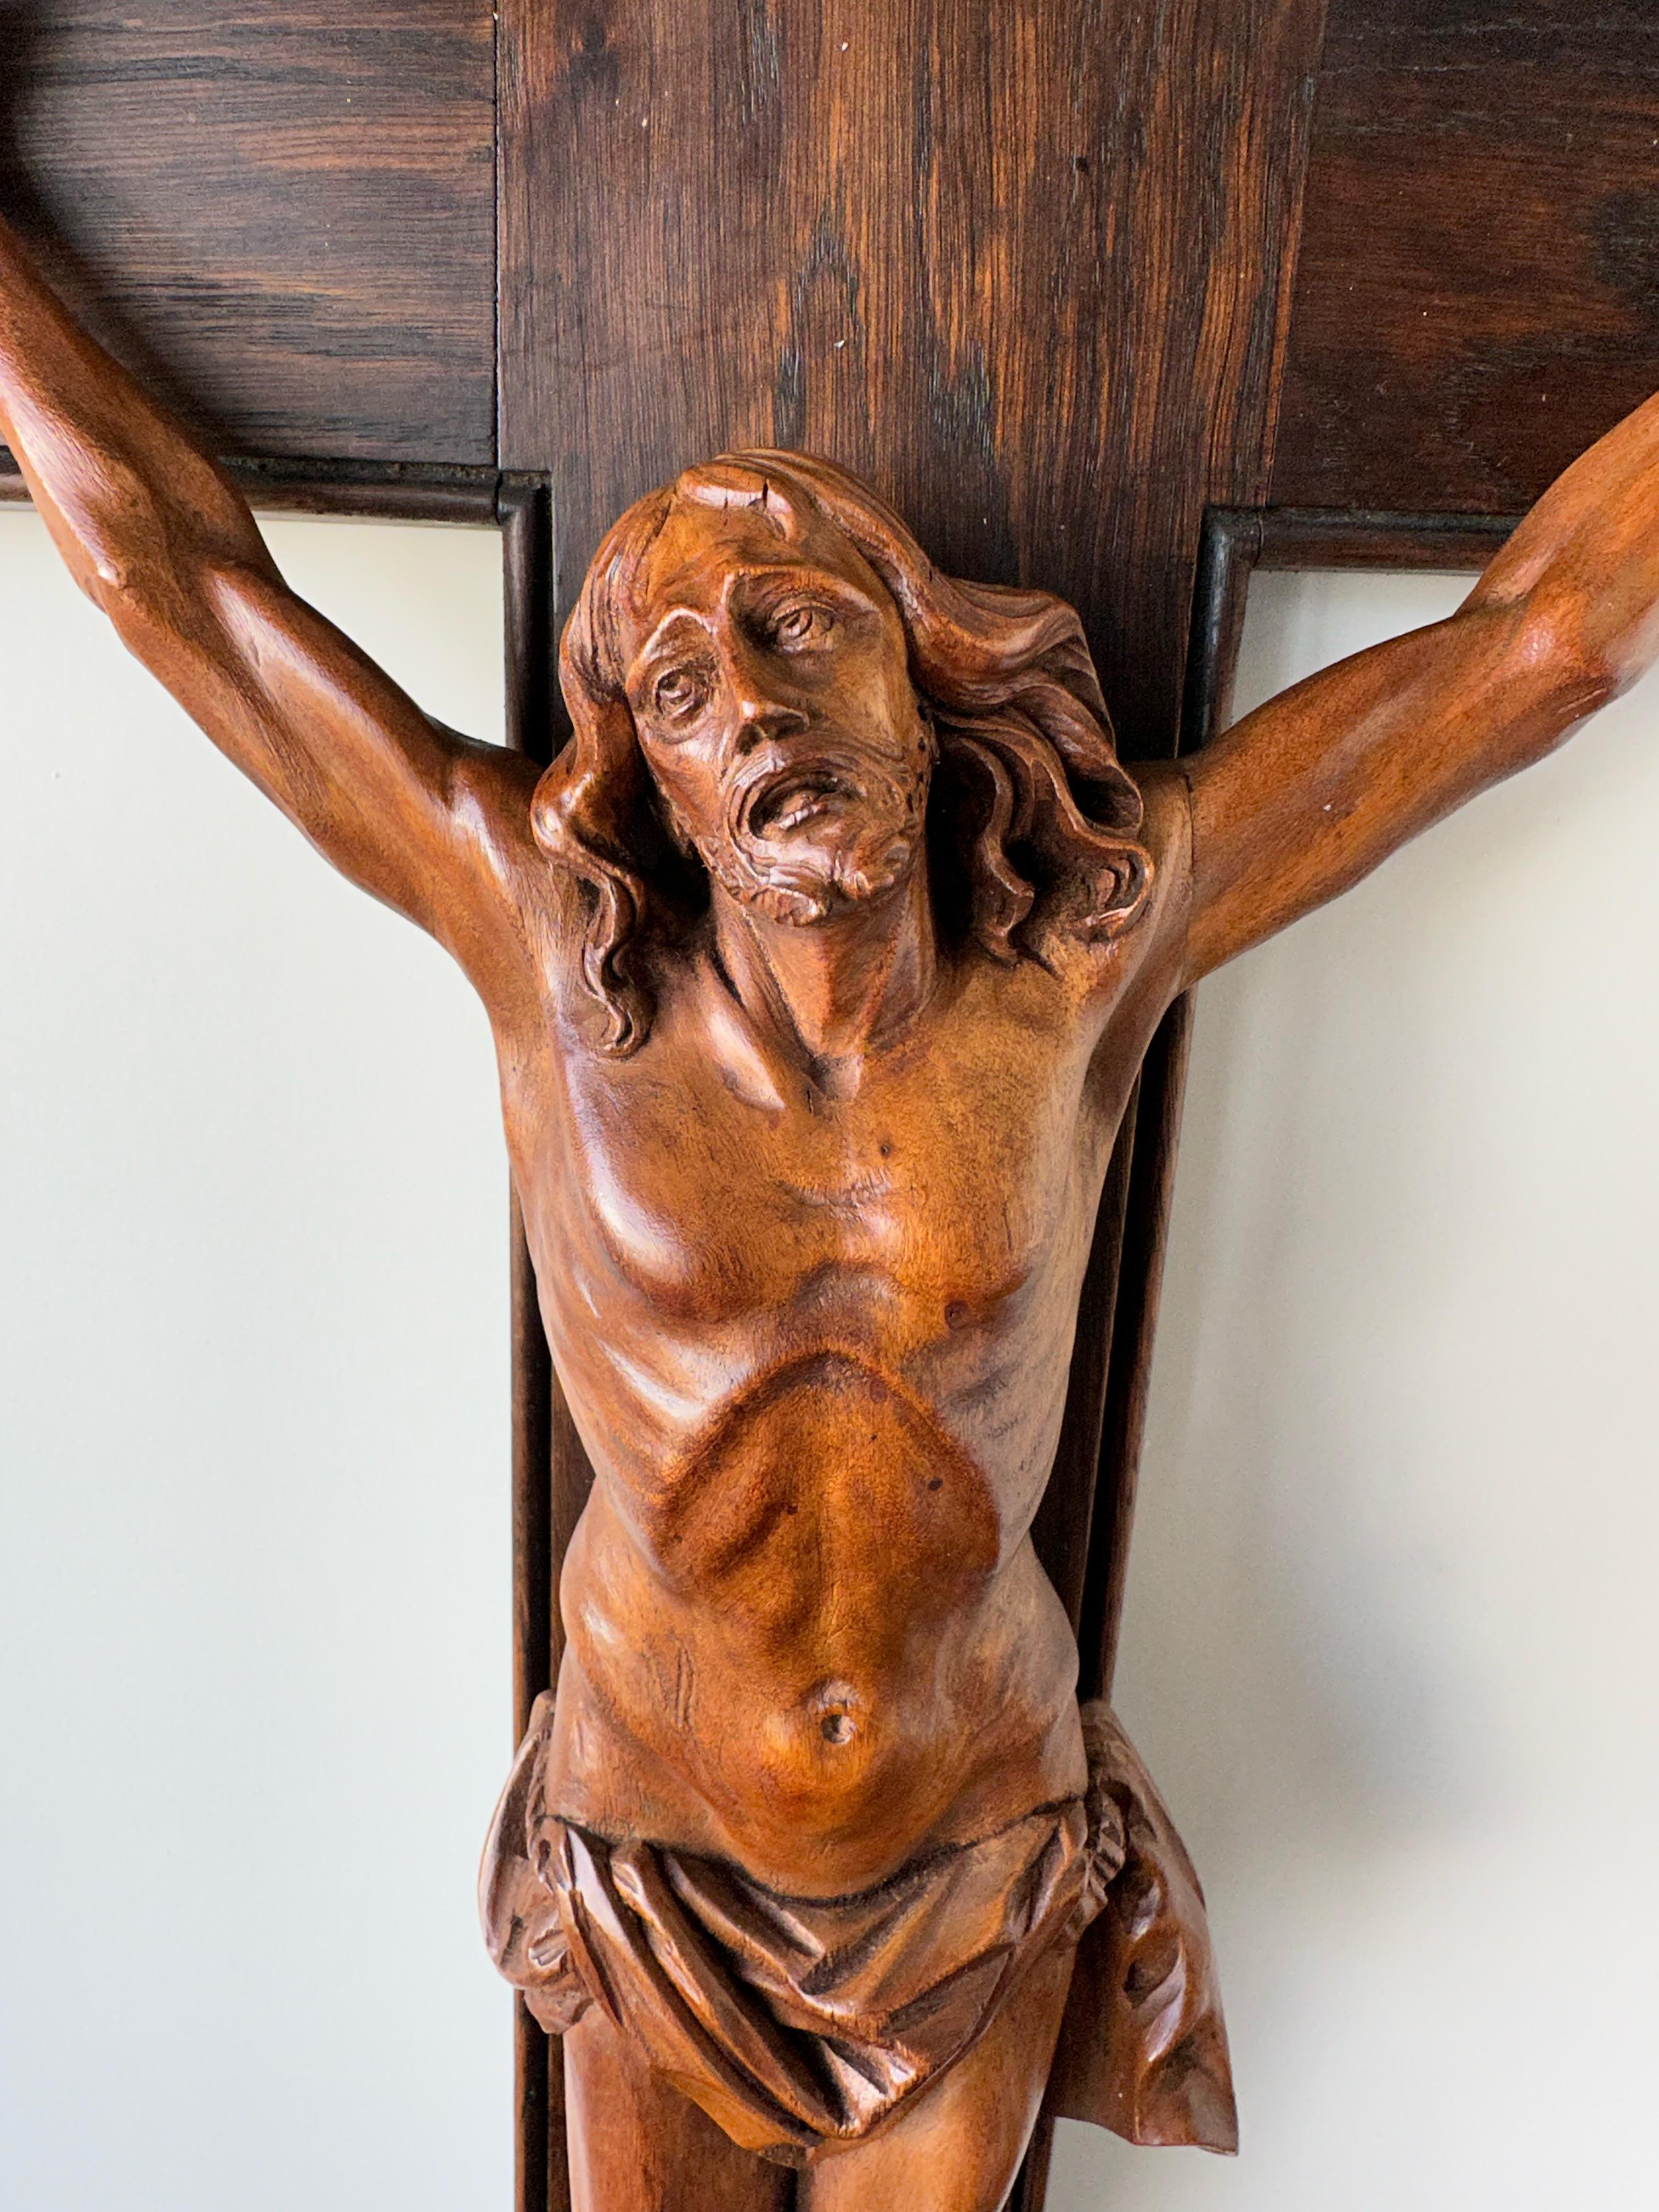 Antikes Kruzifix mit atemberaubenden handgeschnitzten Details und einer erstaunlichen Patina.

Dieses bemerkenswerte und große Kruzifix mit einer Skulptur des leidenden Christus am Kreuz ist ein weiterer unserer jüngsten großartigen Funde. Der